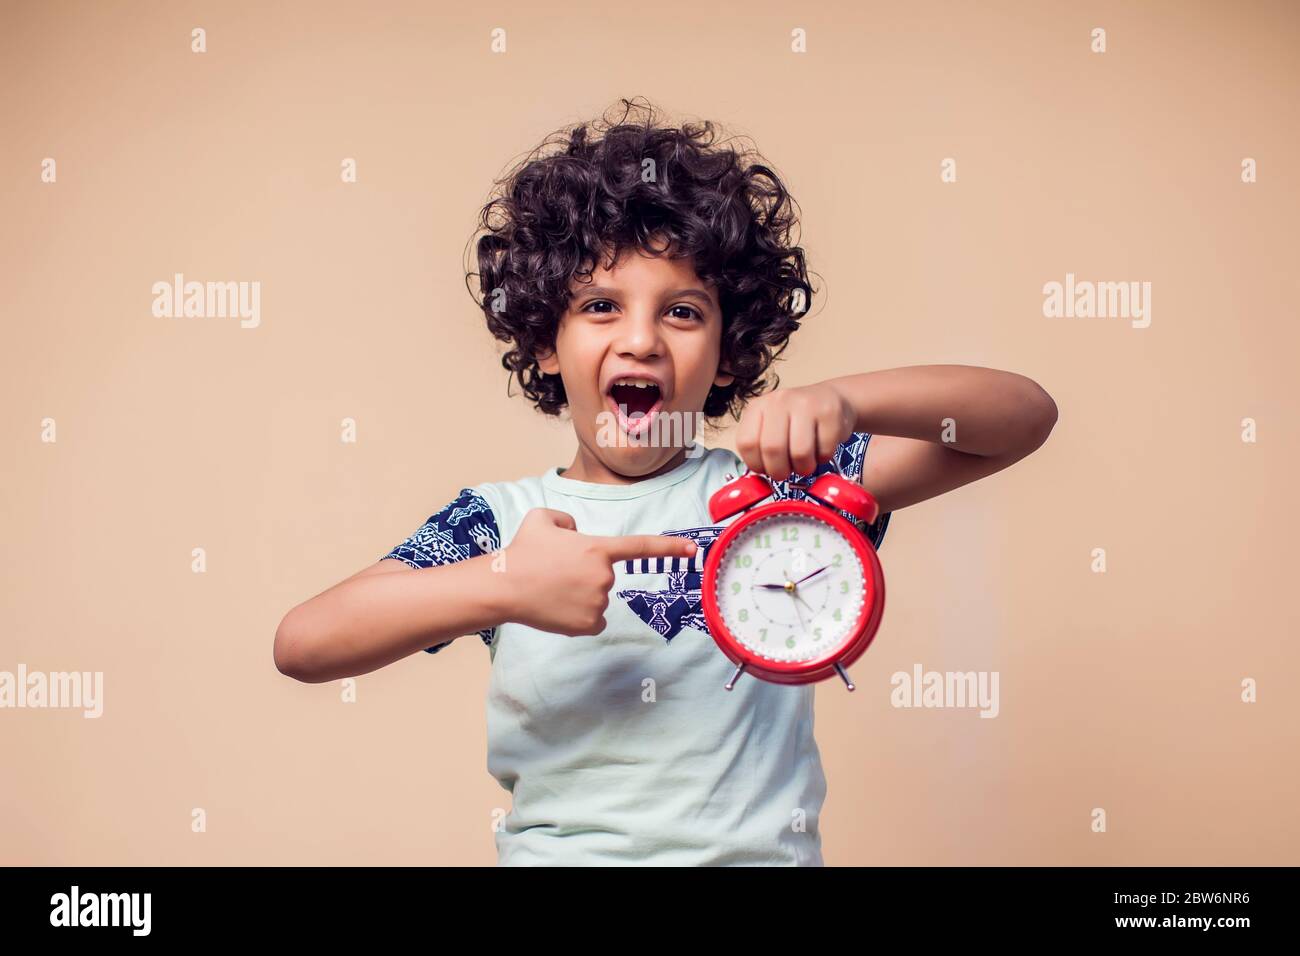 Un portrait d'un enfant surpris tenant et pointant vers le réveil rouge. Concept de gestion du temps et des enfants Banque D'Images